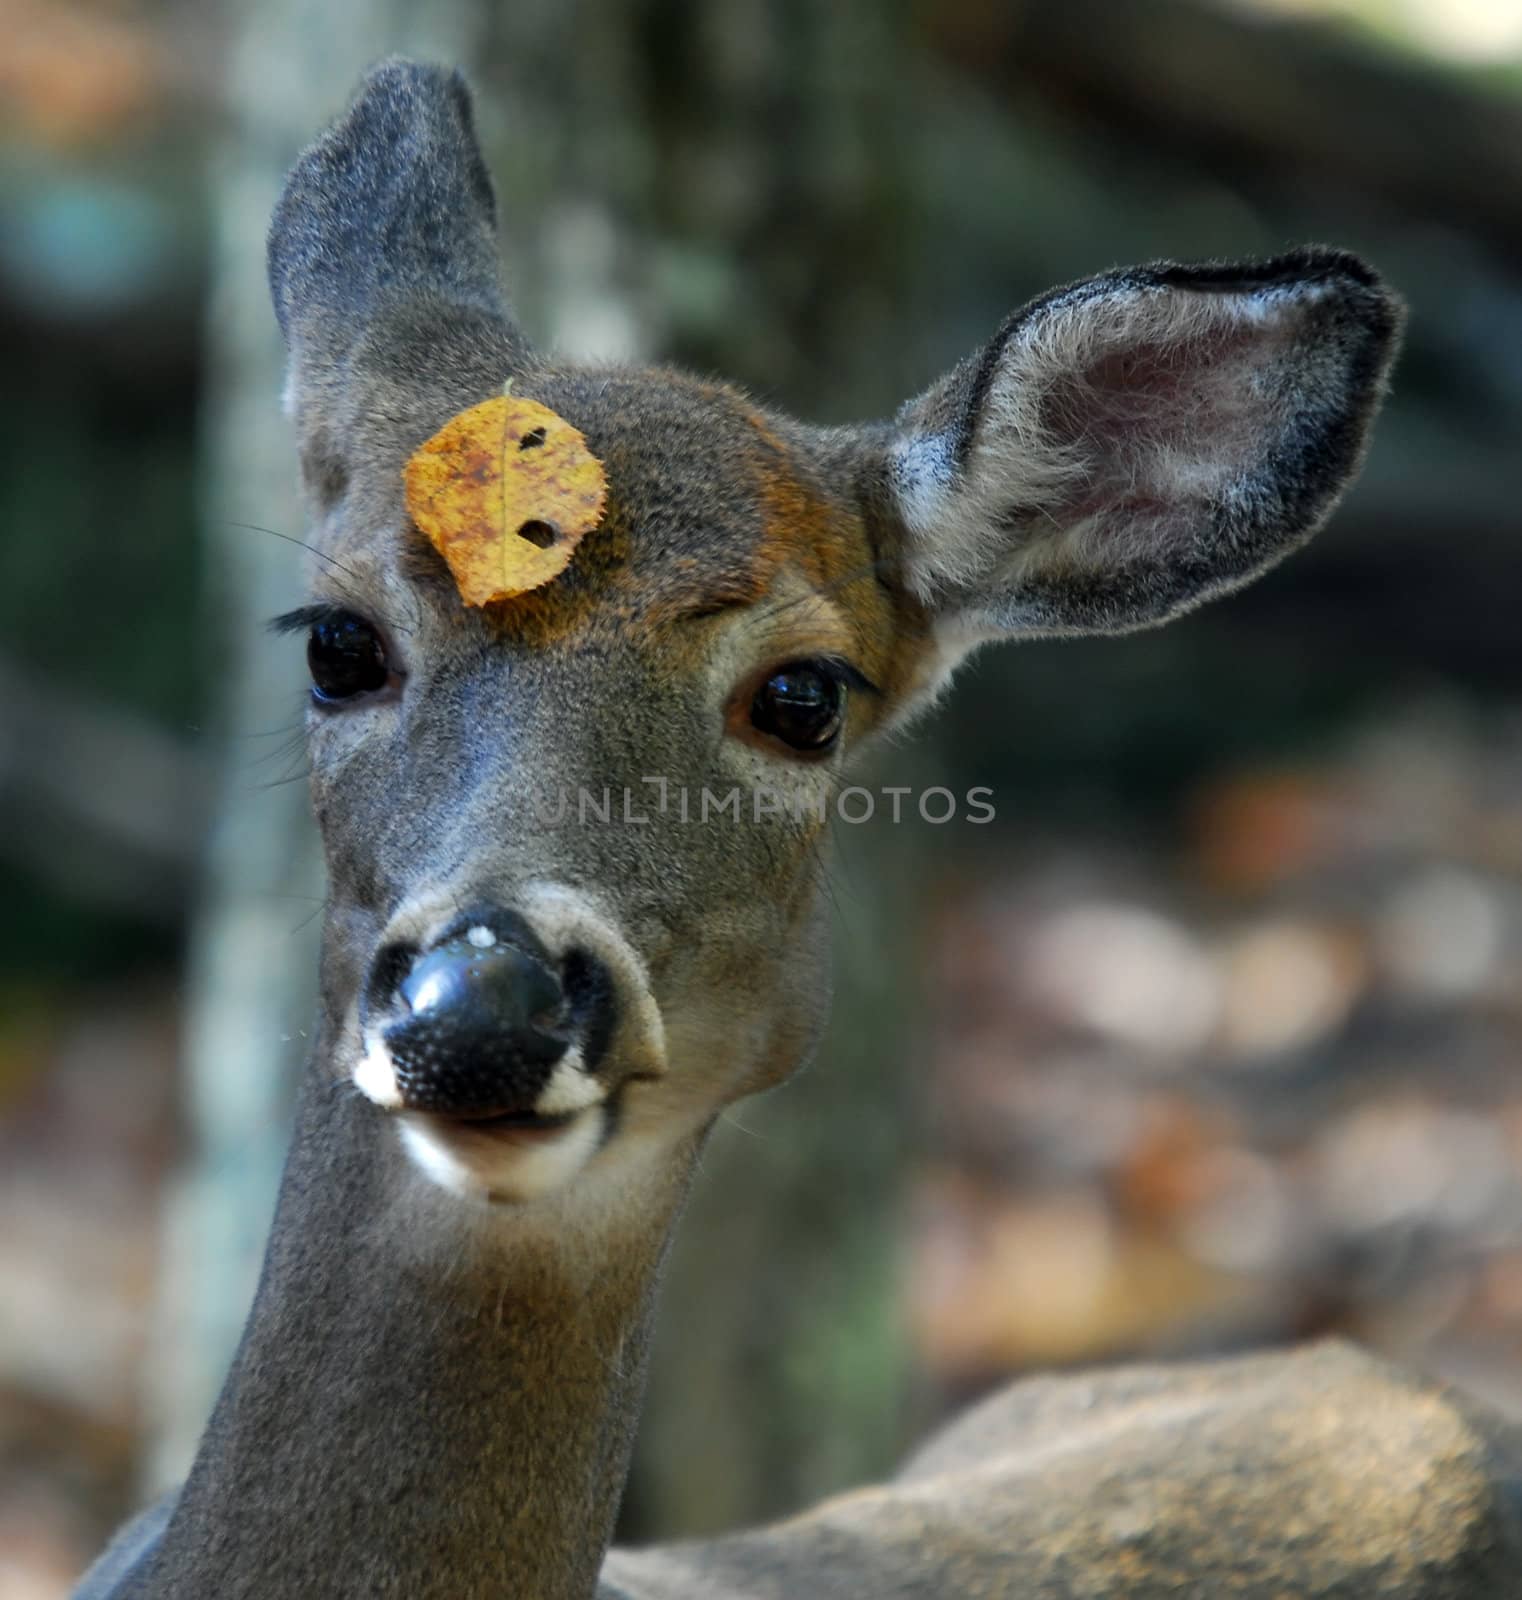 White-tailed deer (Odocoileus virginianus) by nialat